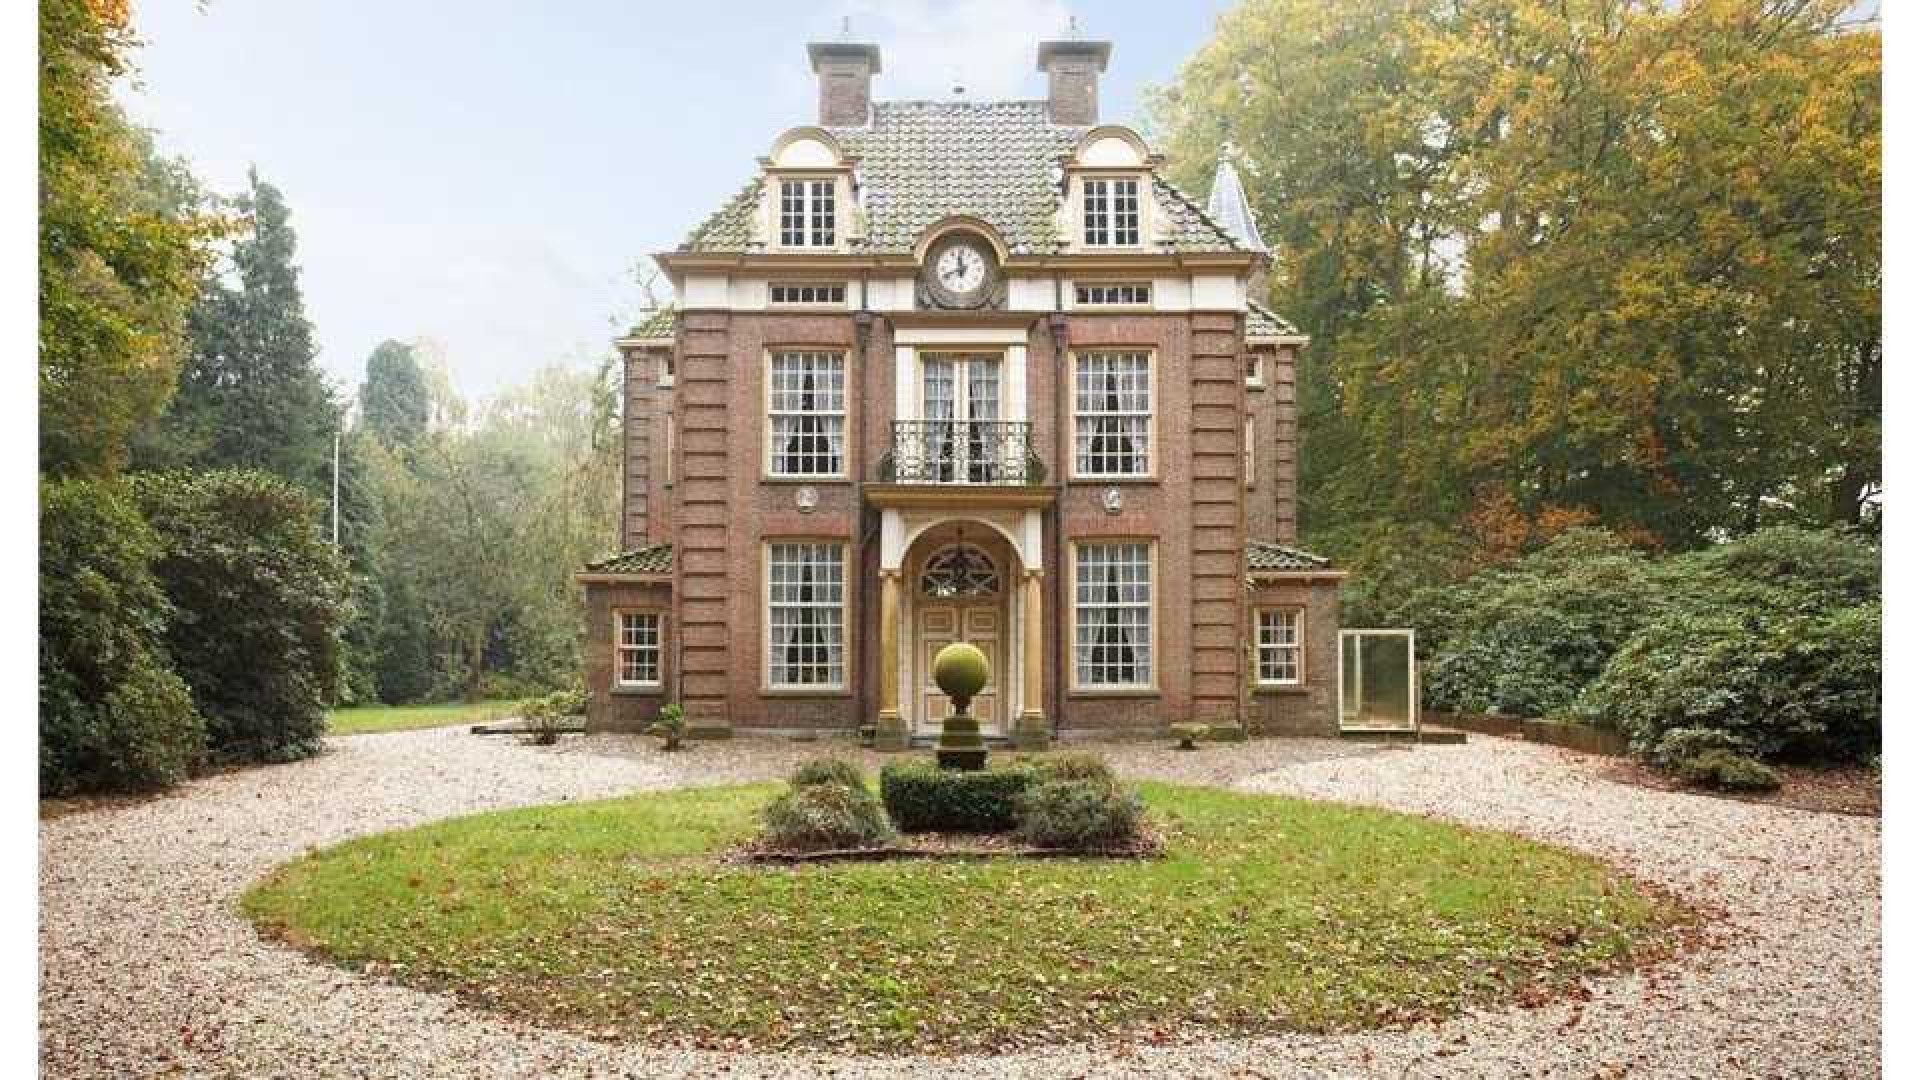 Oud PvdA topman Marcel van Dam verruilt riant landhuis voor eeuwenoud kasteel. Zie foto's 3